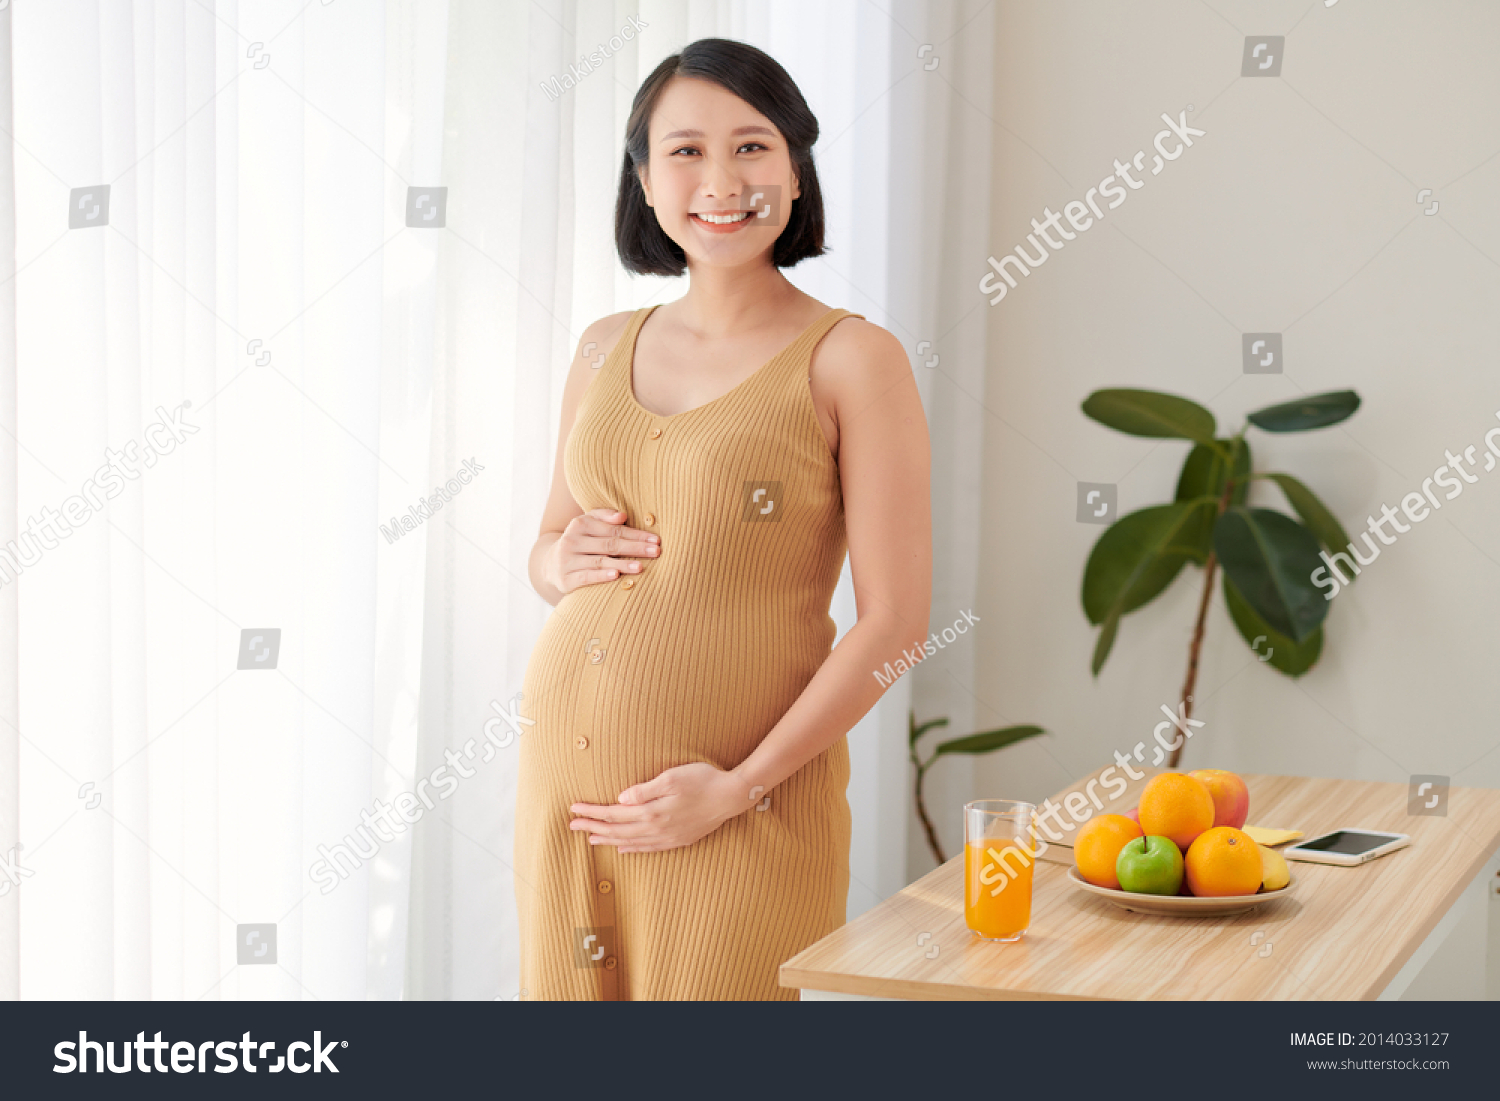 11127 Beautiful Pregnant Asian Woman Stock Photos